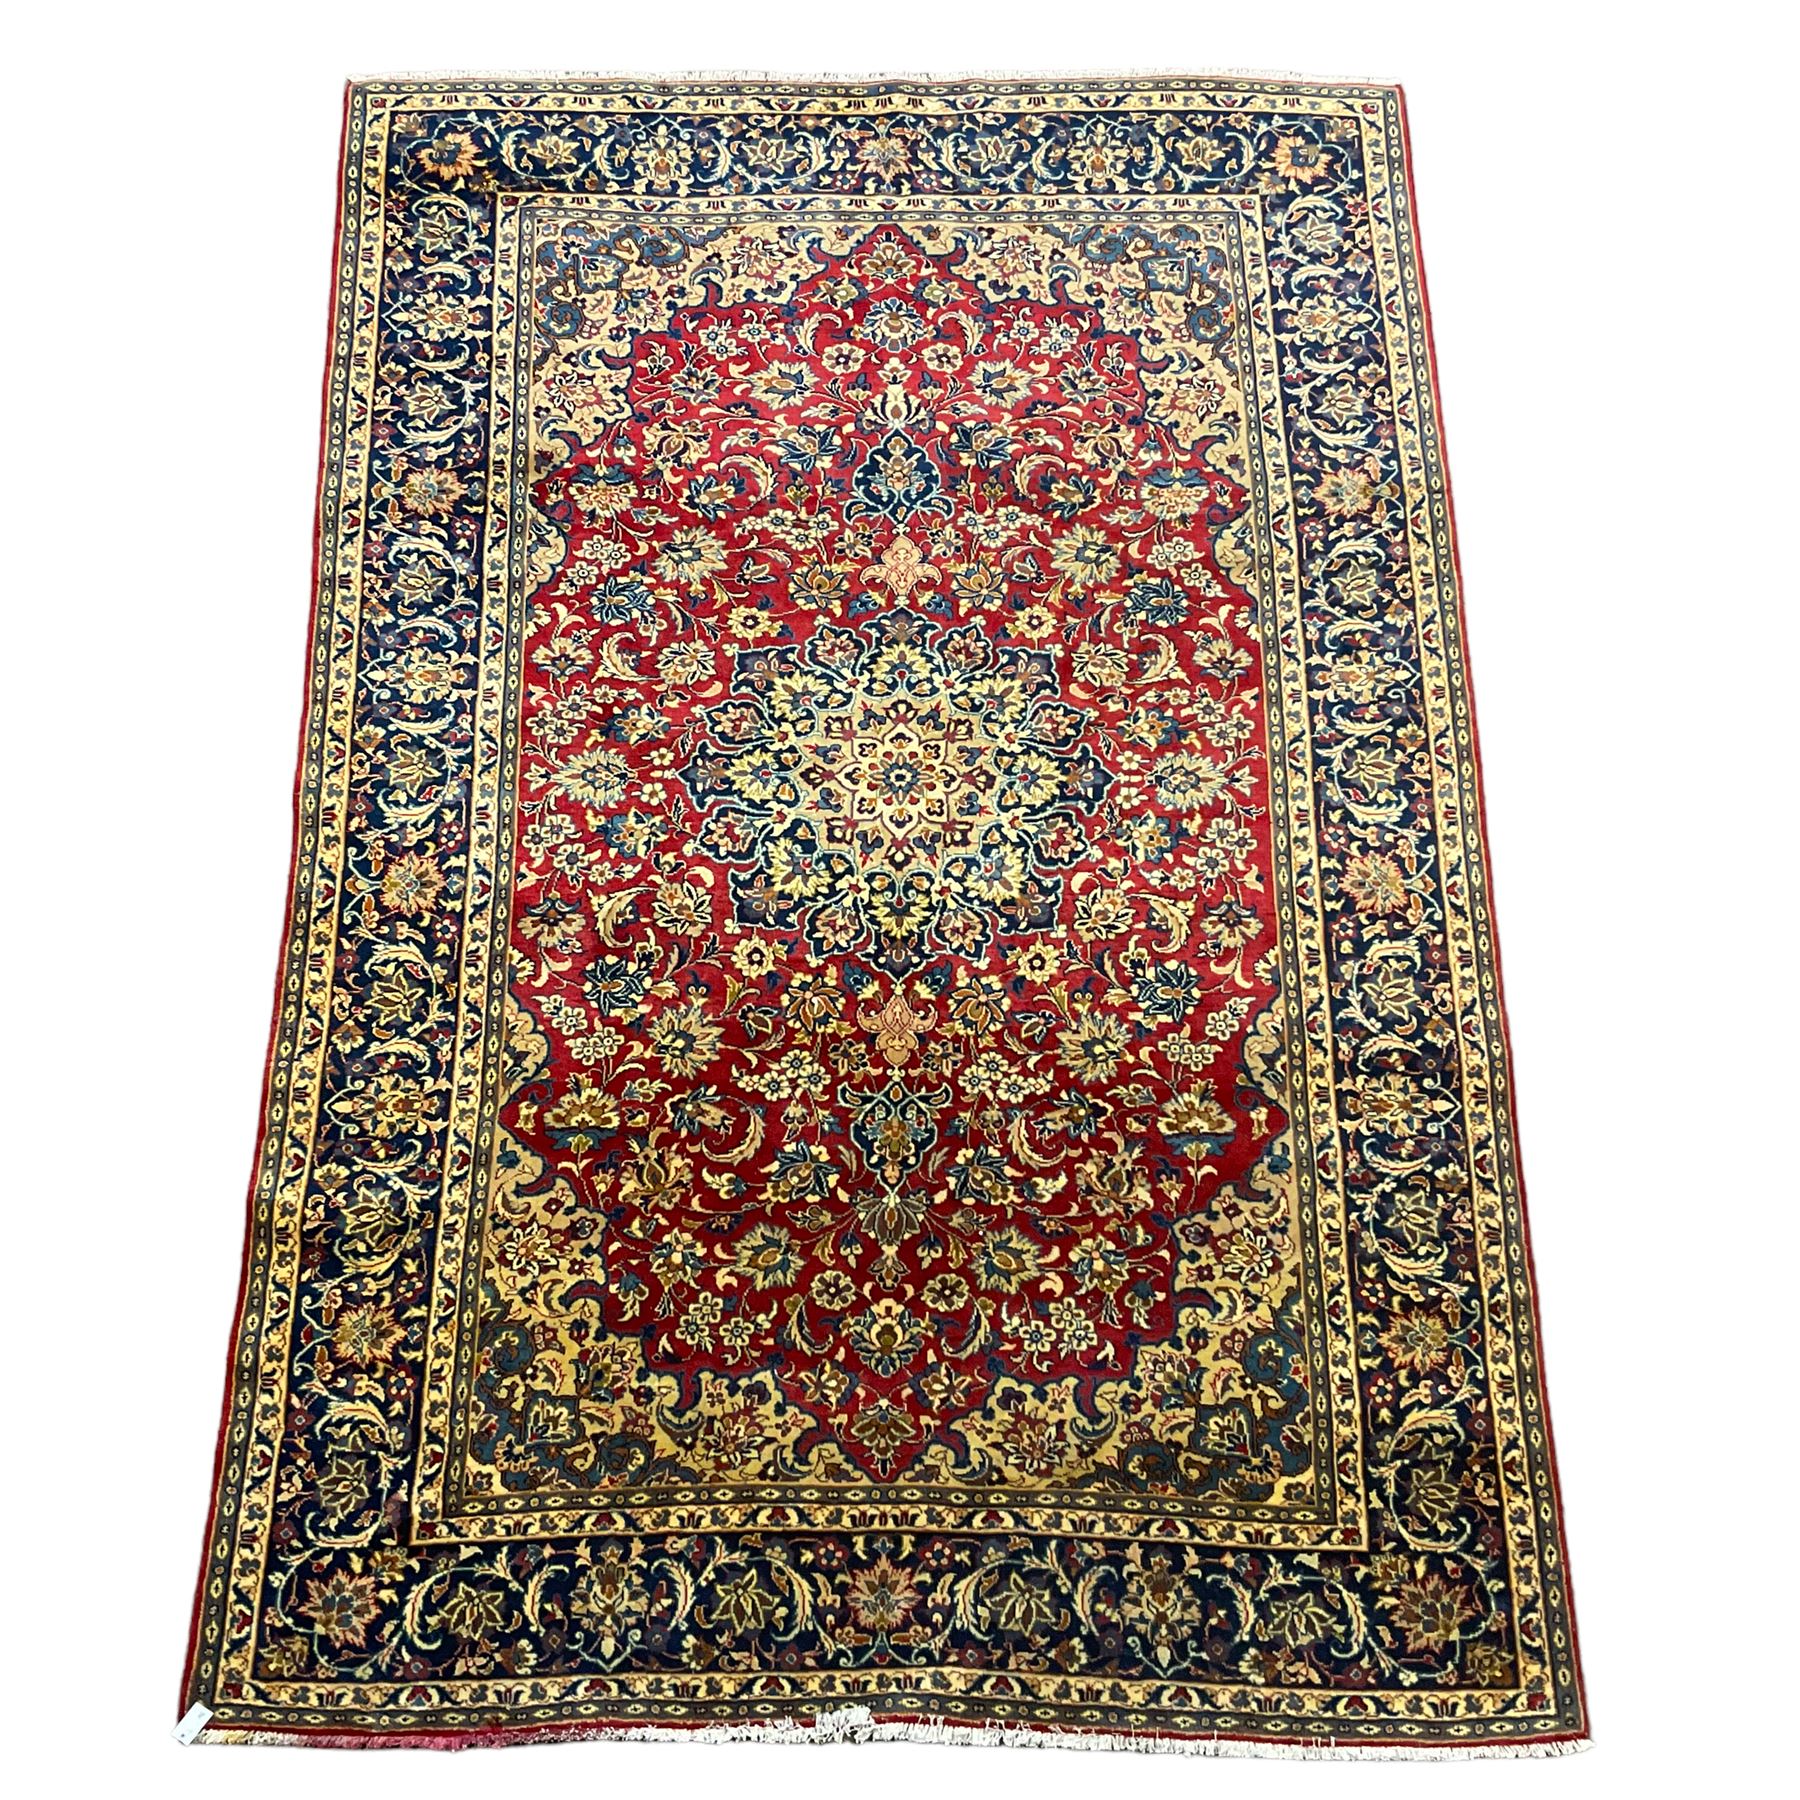 Persian Kashan red ground carpet